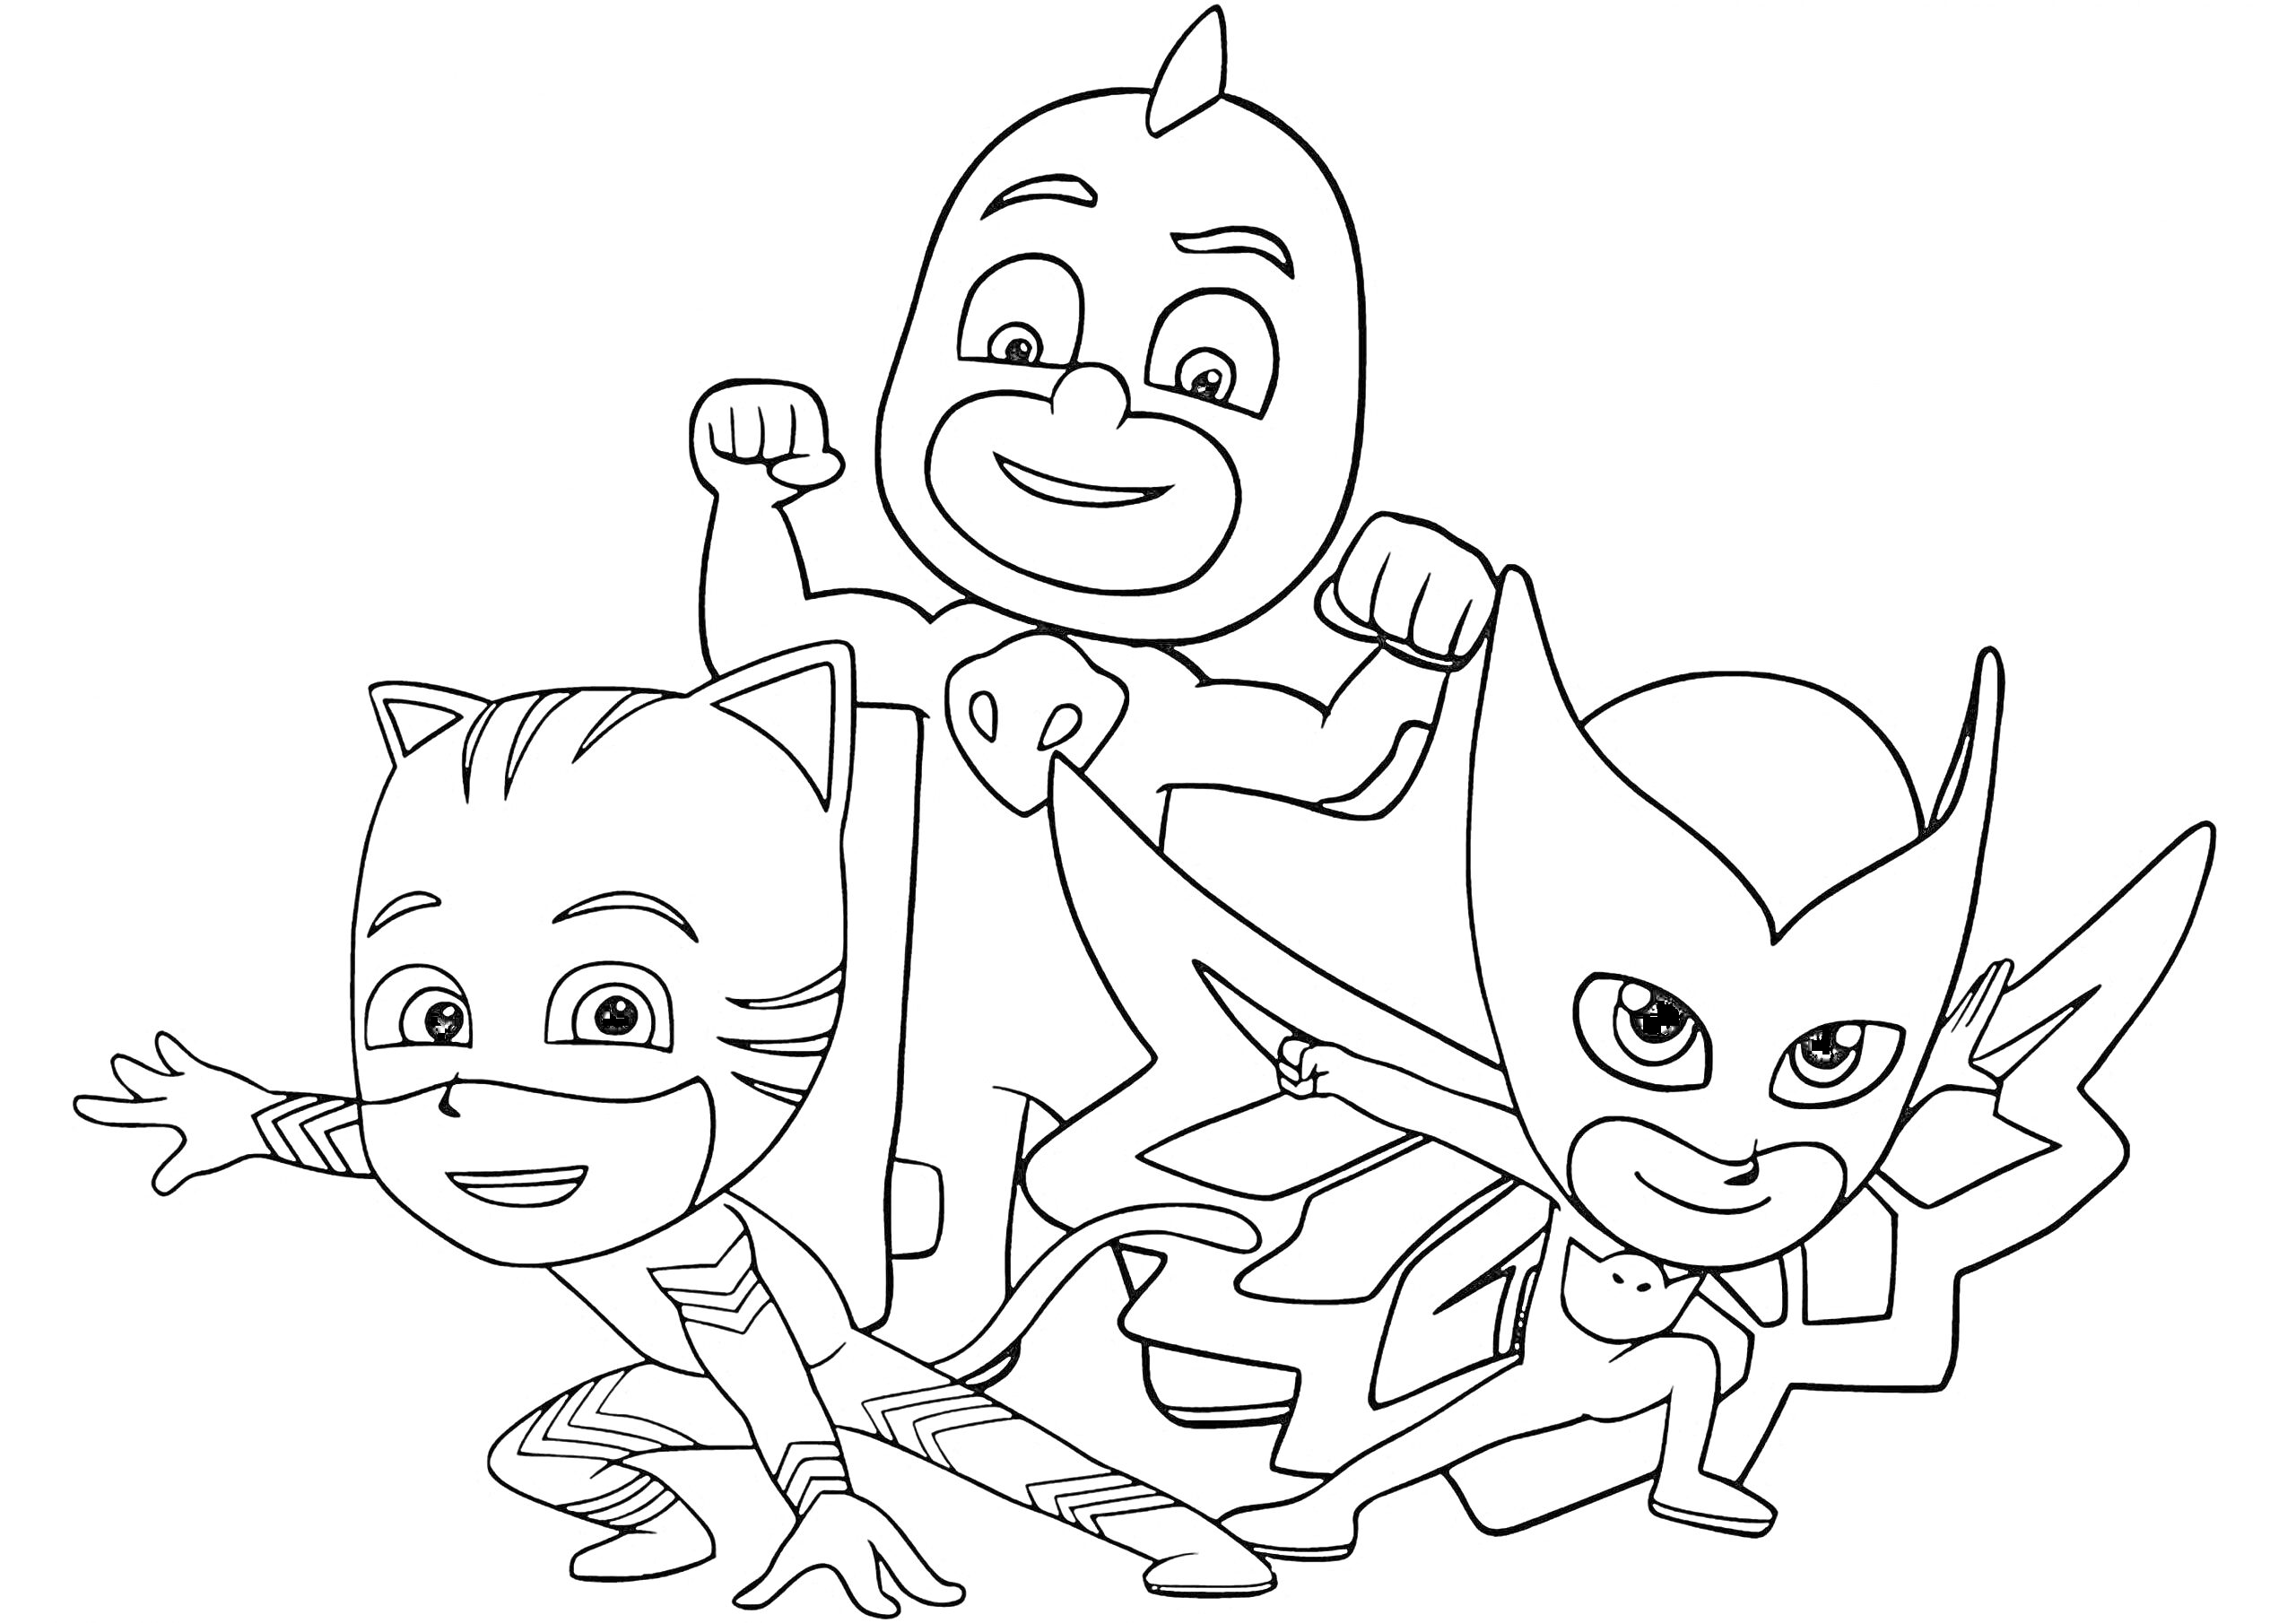 Раскраска с тремя героями в масках - котом, совой и ящерицей, стоящими в позах для сражений